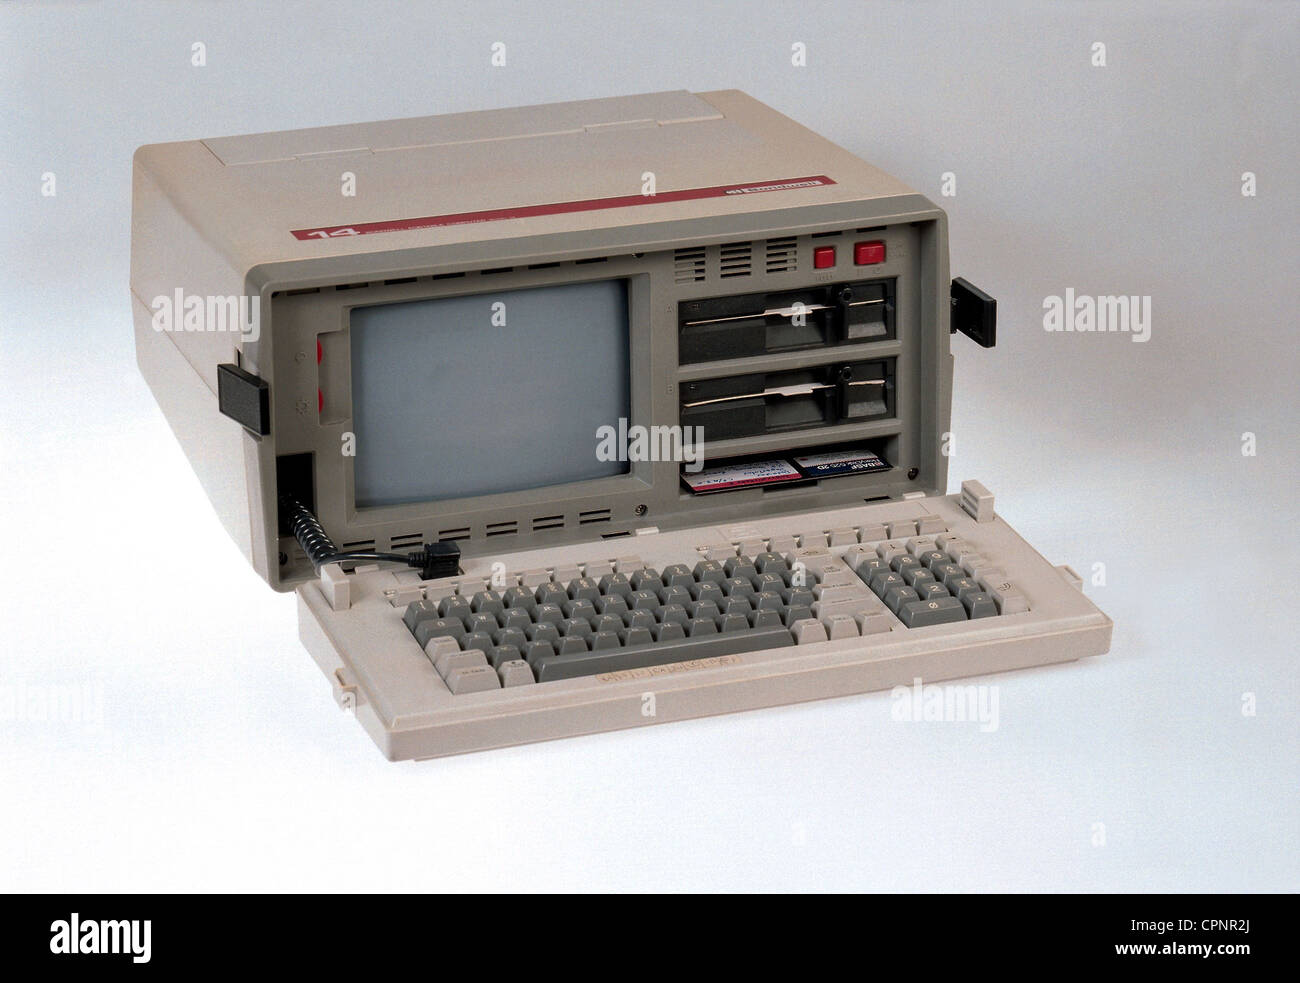 Informatique / électronique,ordinateur,portable Bondwell 14,ordinateur  portable,USA,1984,portable,poids: 13 kilogramme,moniteur 9 pouces  intégré,processeur Z80A avec 4 mégahertz,128 kilyte mémoire d'accès  aléatoire,deux lecteurs de disquettes 5.25 ...